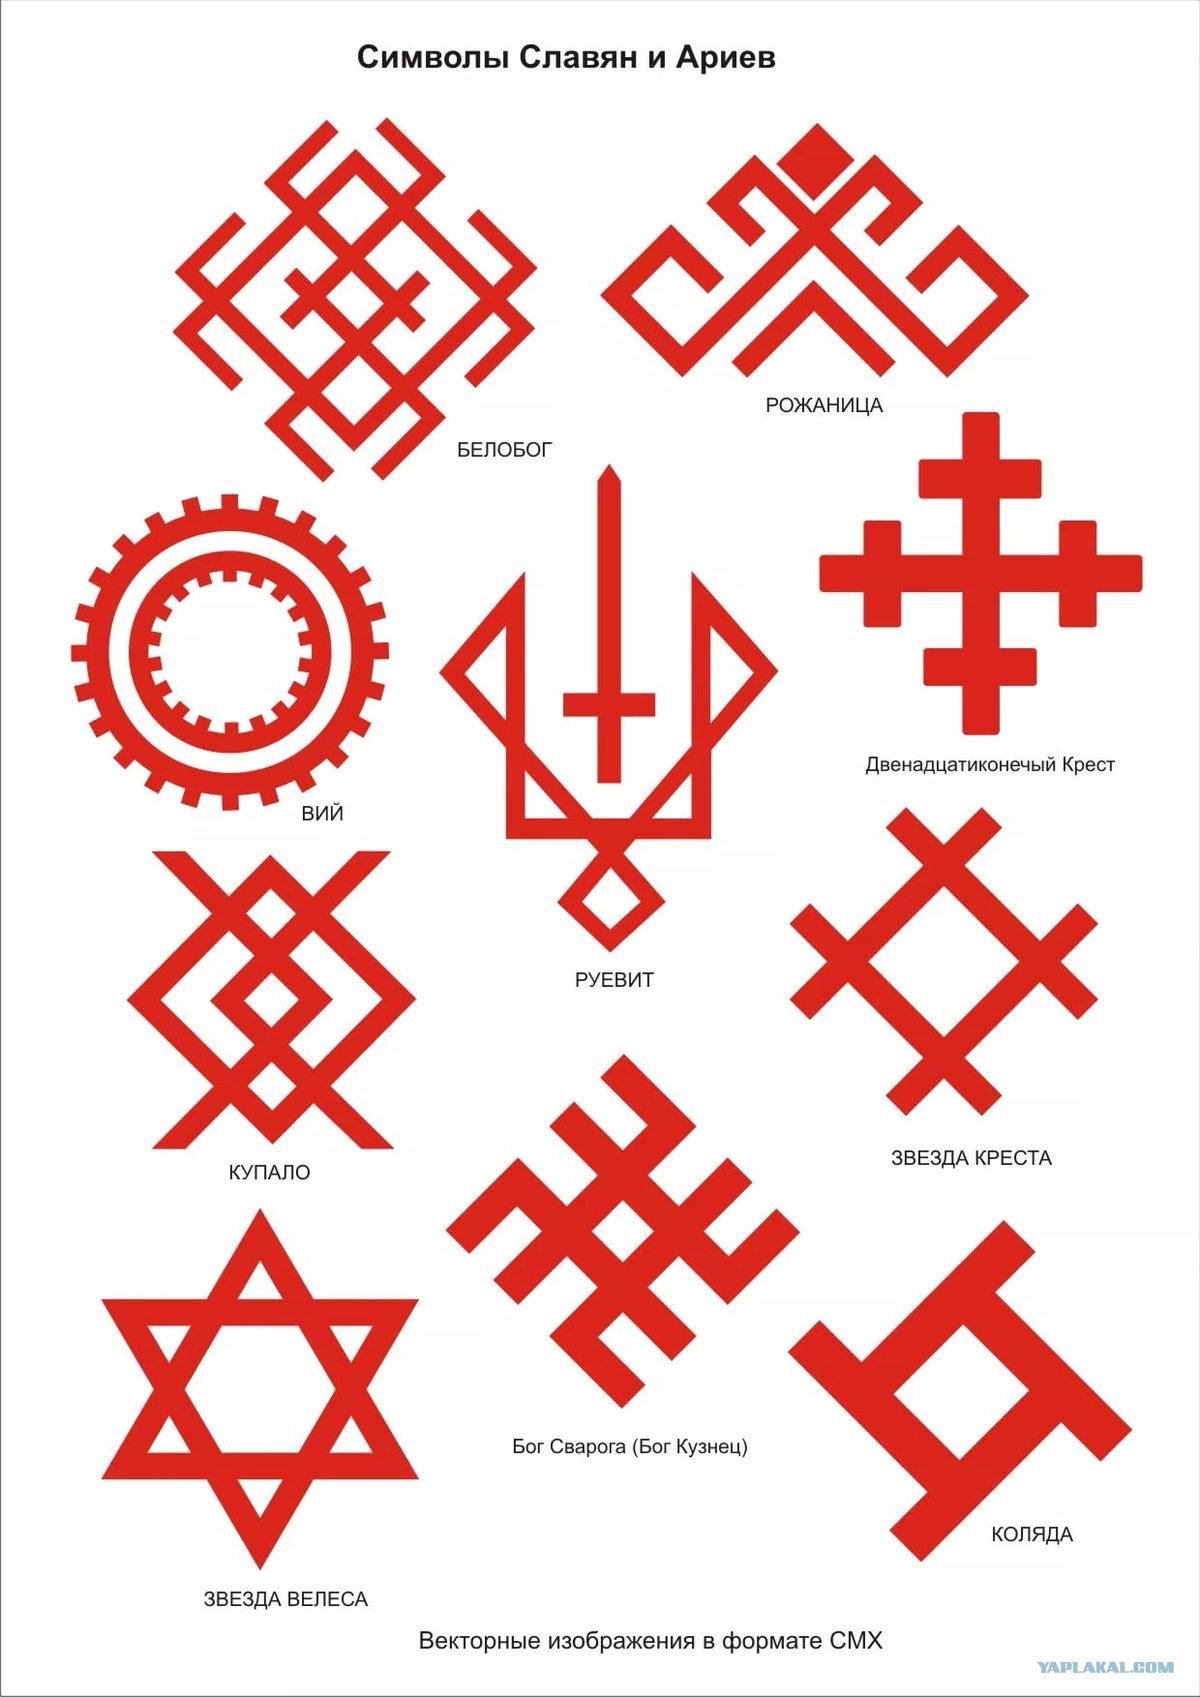 Солярные символы славян обереги. Древние славянские свастичные символы-обереги. Слово бережа